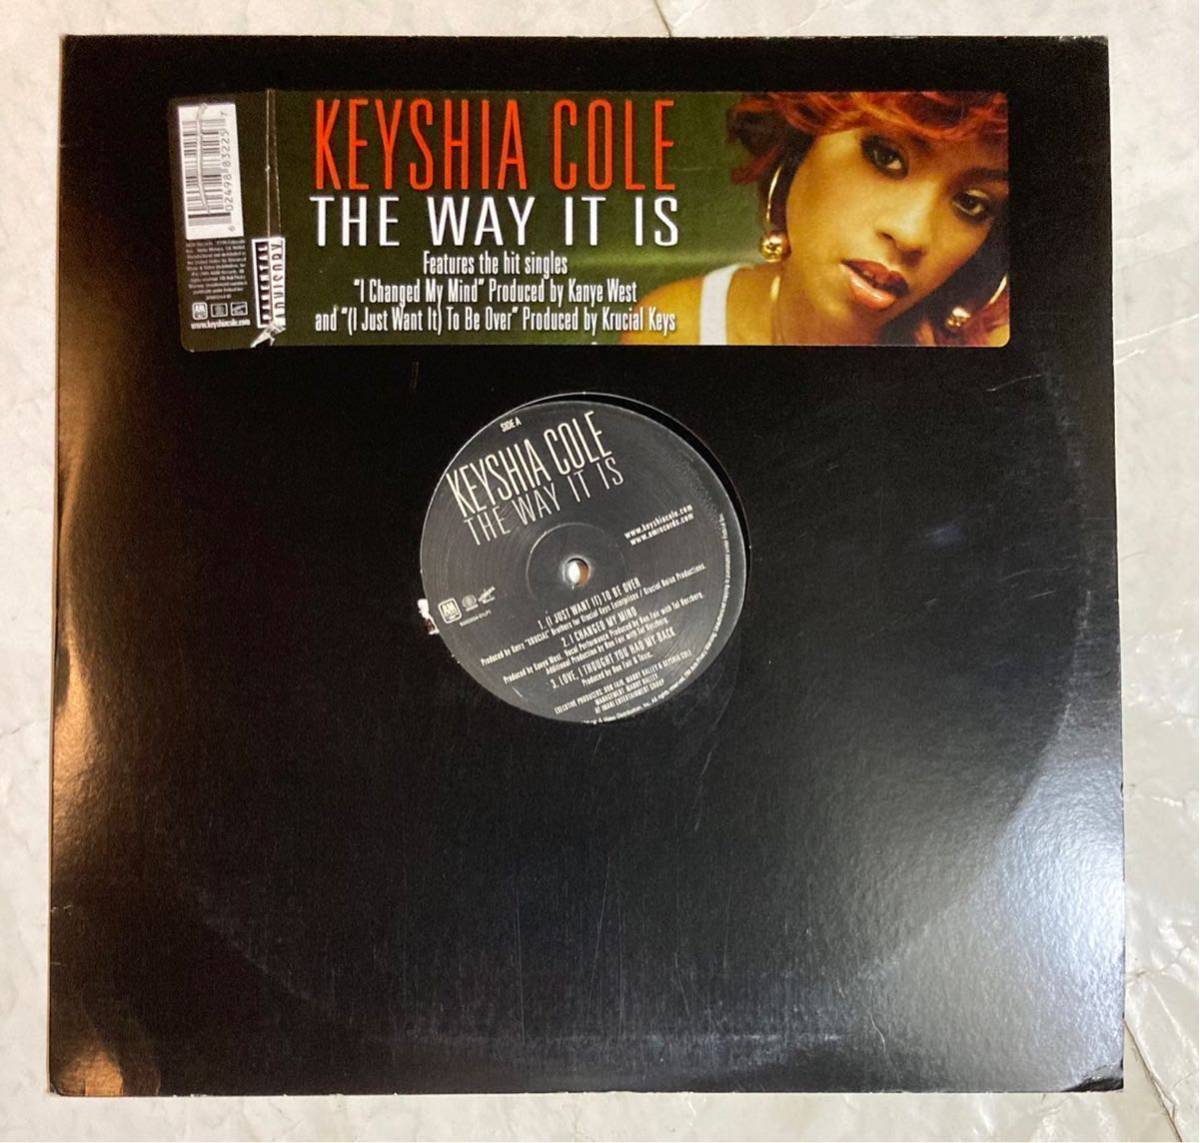 2LP US盤 Keyshia Cole The Way It Is B0003554-01